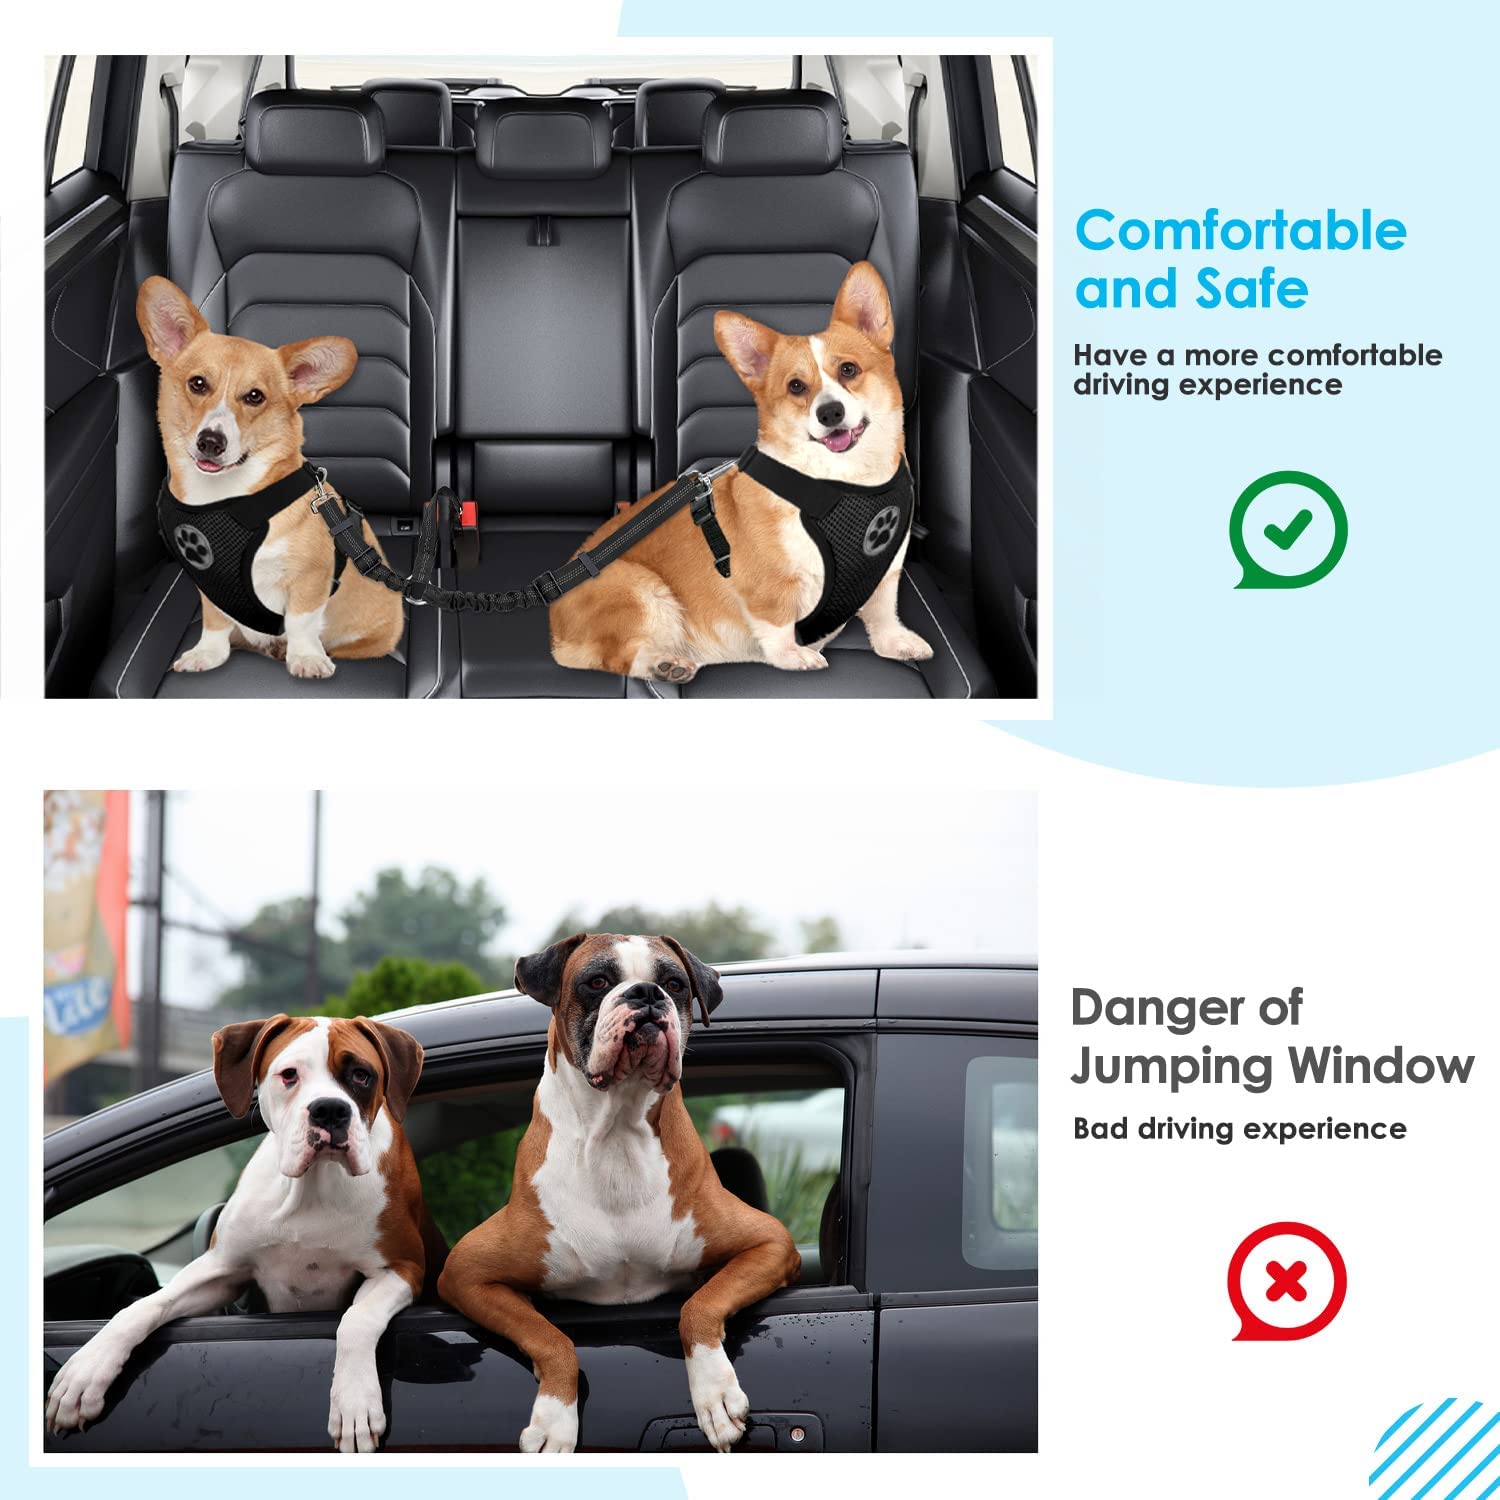 از پریدن سگ ها در ماشین و جلوگیری از تلاش آنها برای پریدن به صندلی جلو جلوگیری می کند.